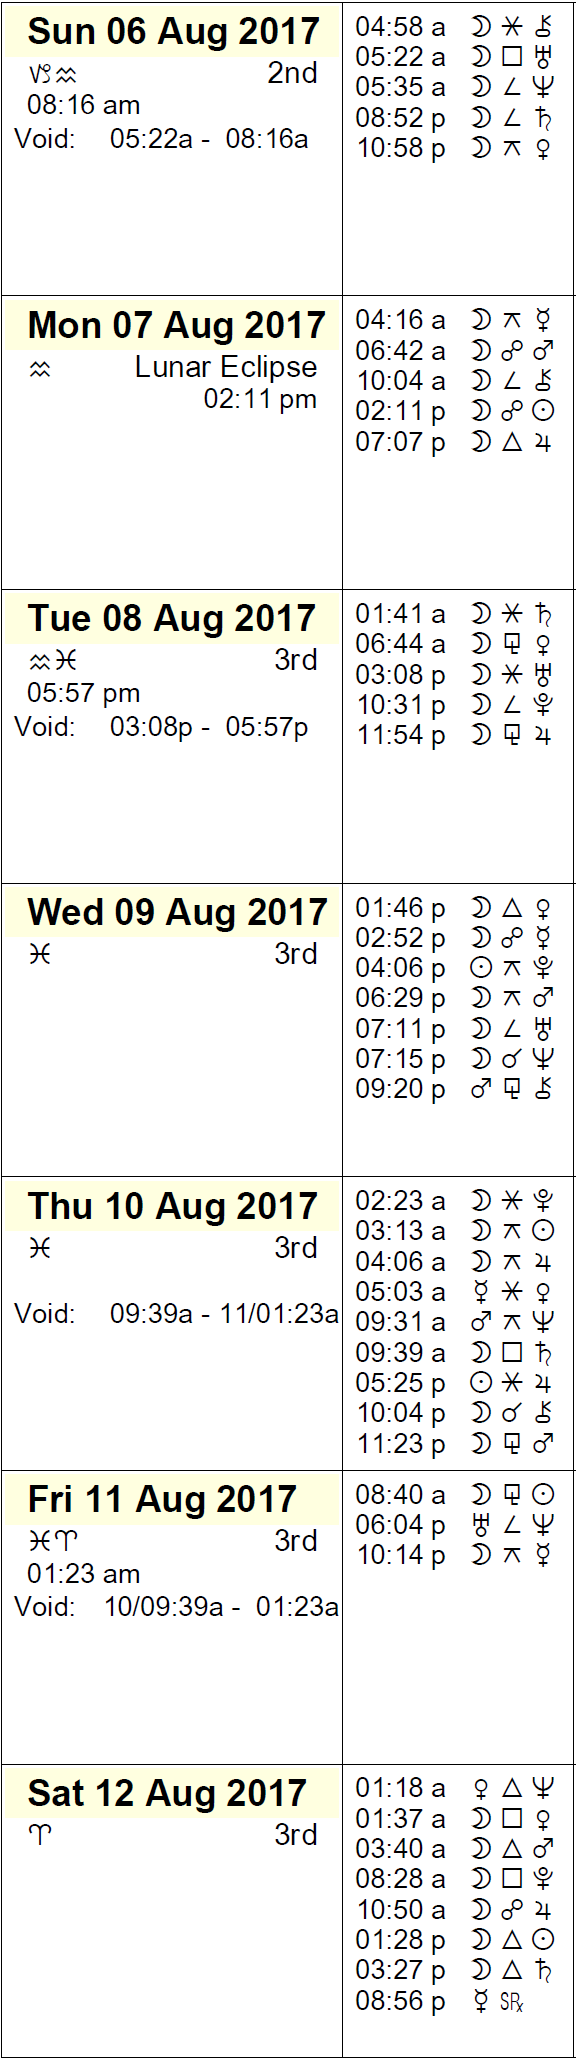 This Week in Astrology Calendar - August 6-12, 2017